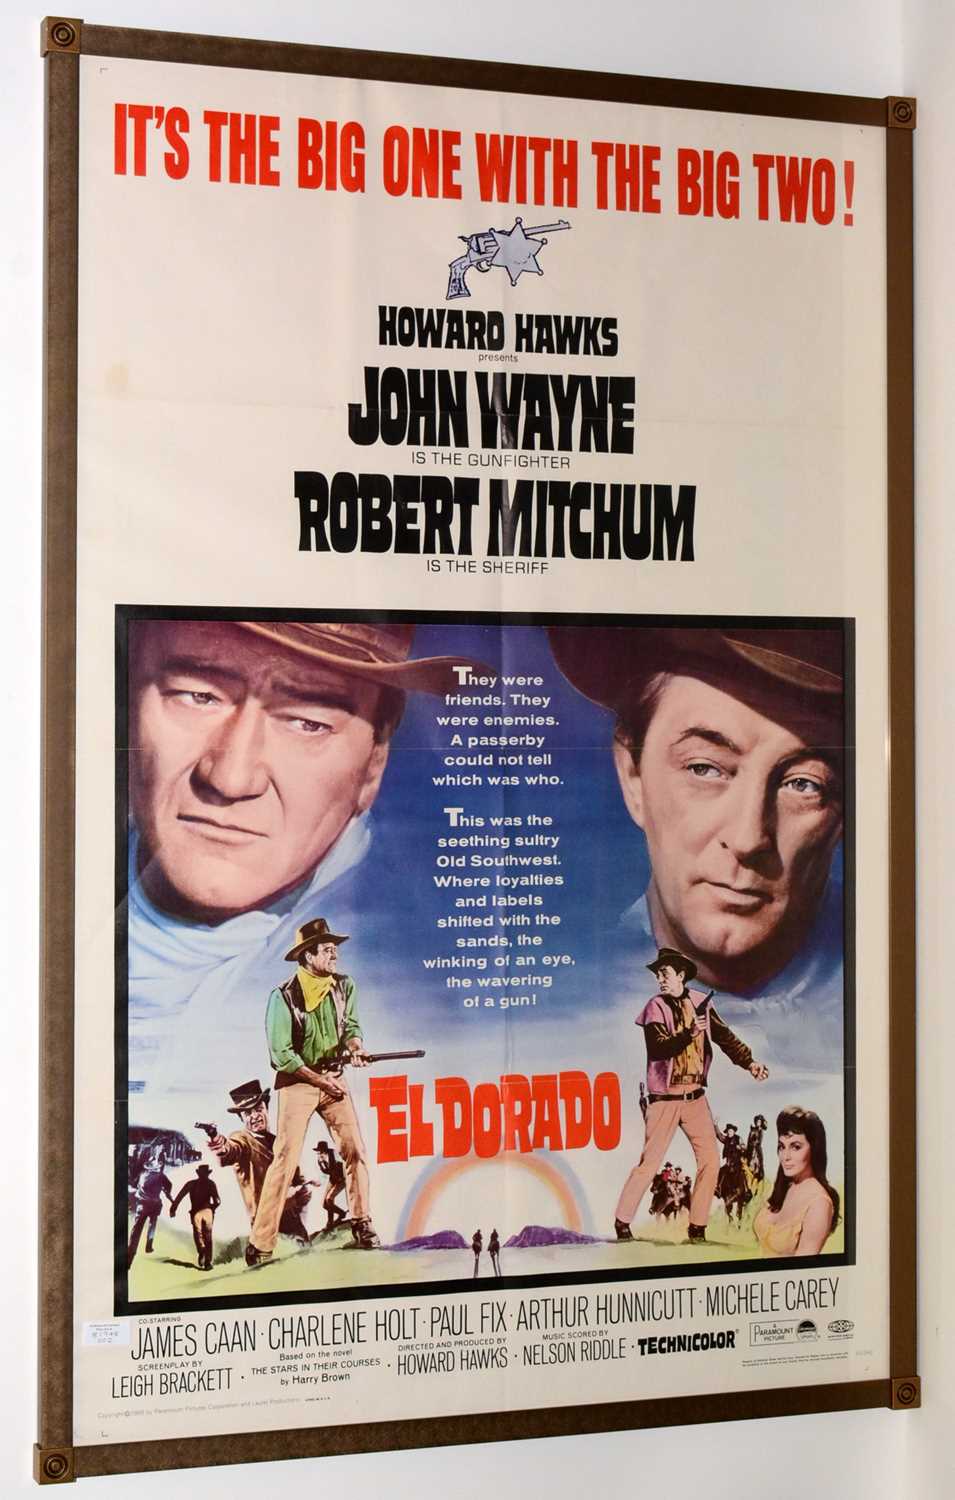 Lot 1288 - Movie poster for "El Dorado"